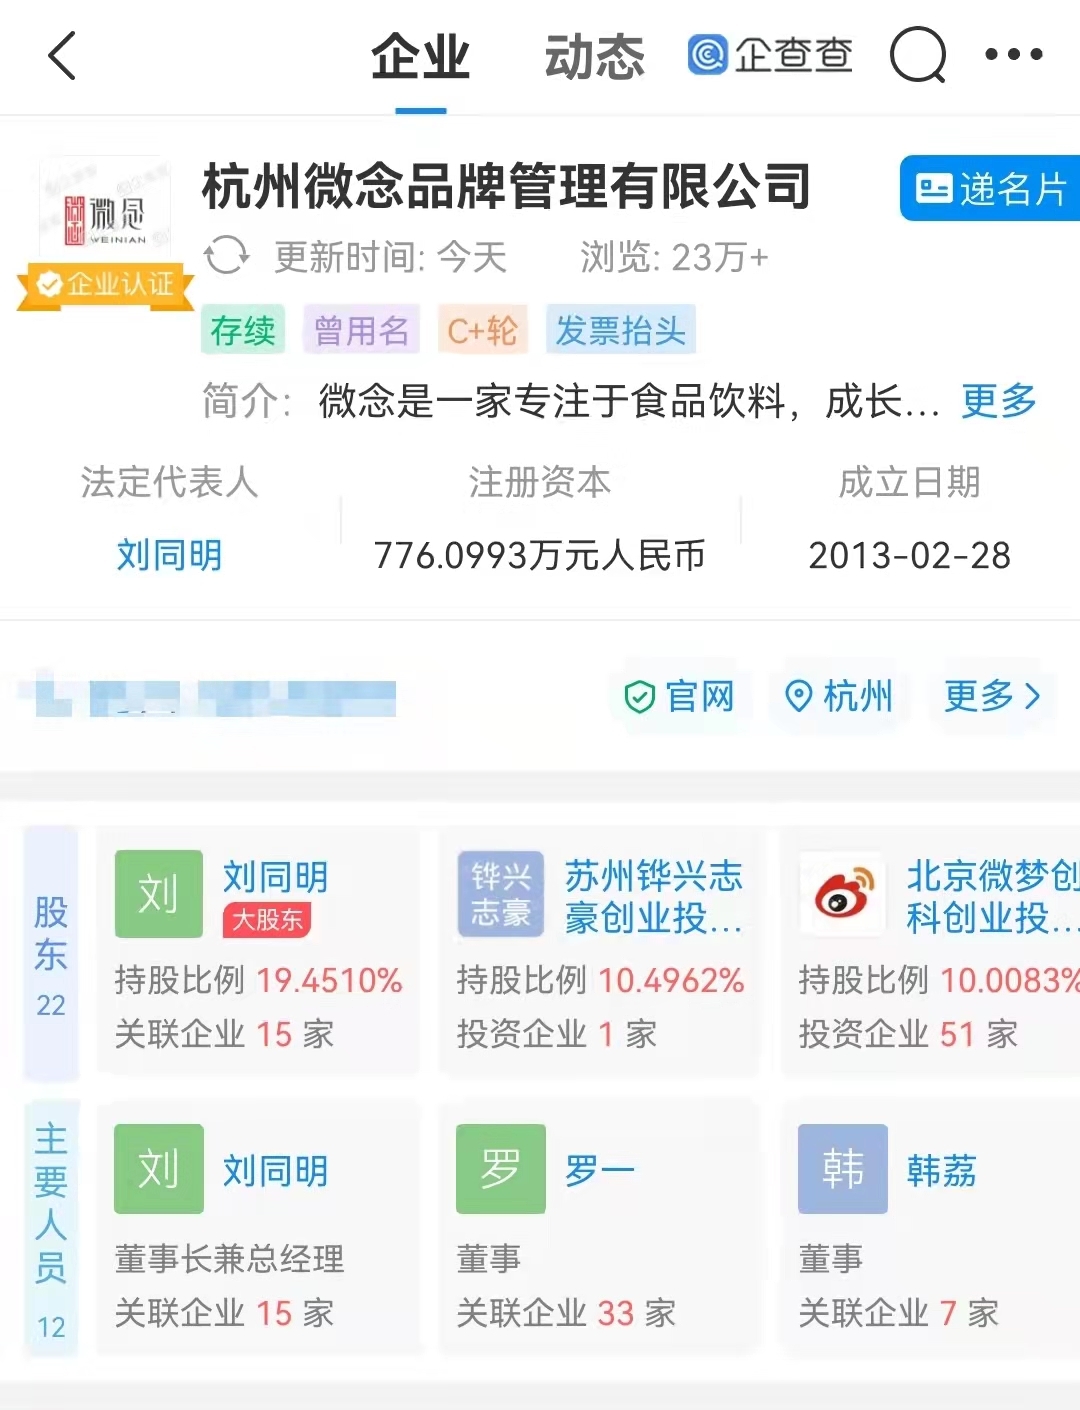 此外,企查查显示,杭州微念公司成立于2013年2月,法定代表人为刘同明